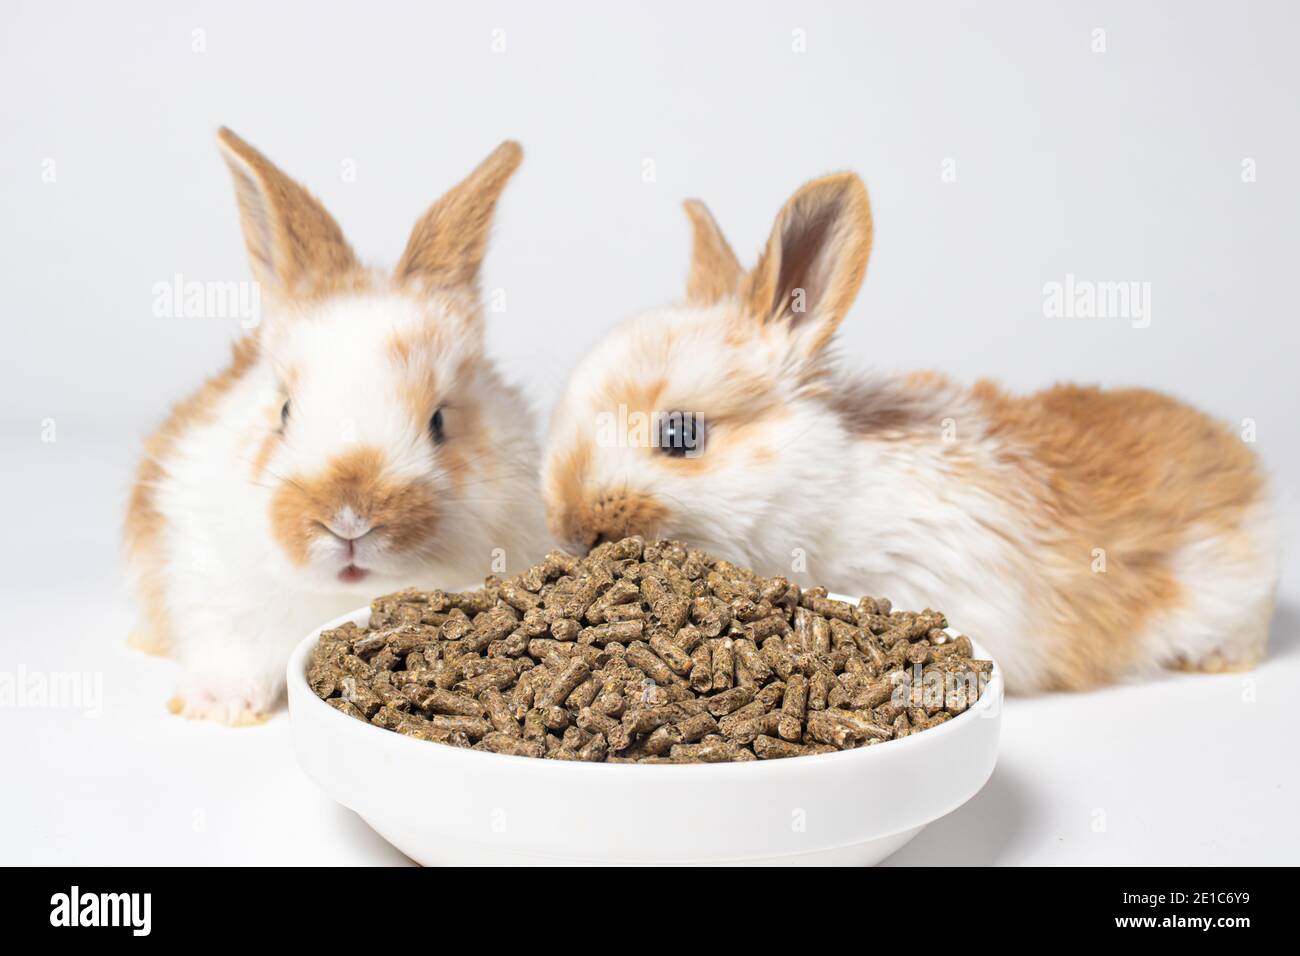 Zwei weiße Hasen fressen Futter von einem Teller auf weißem Grund. Nahrung für Hauskaninchen und Fleischkaninchen. Mischfutter, Tierhandlung. Stockfoto